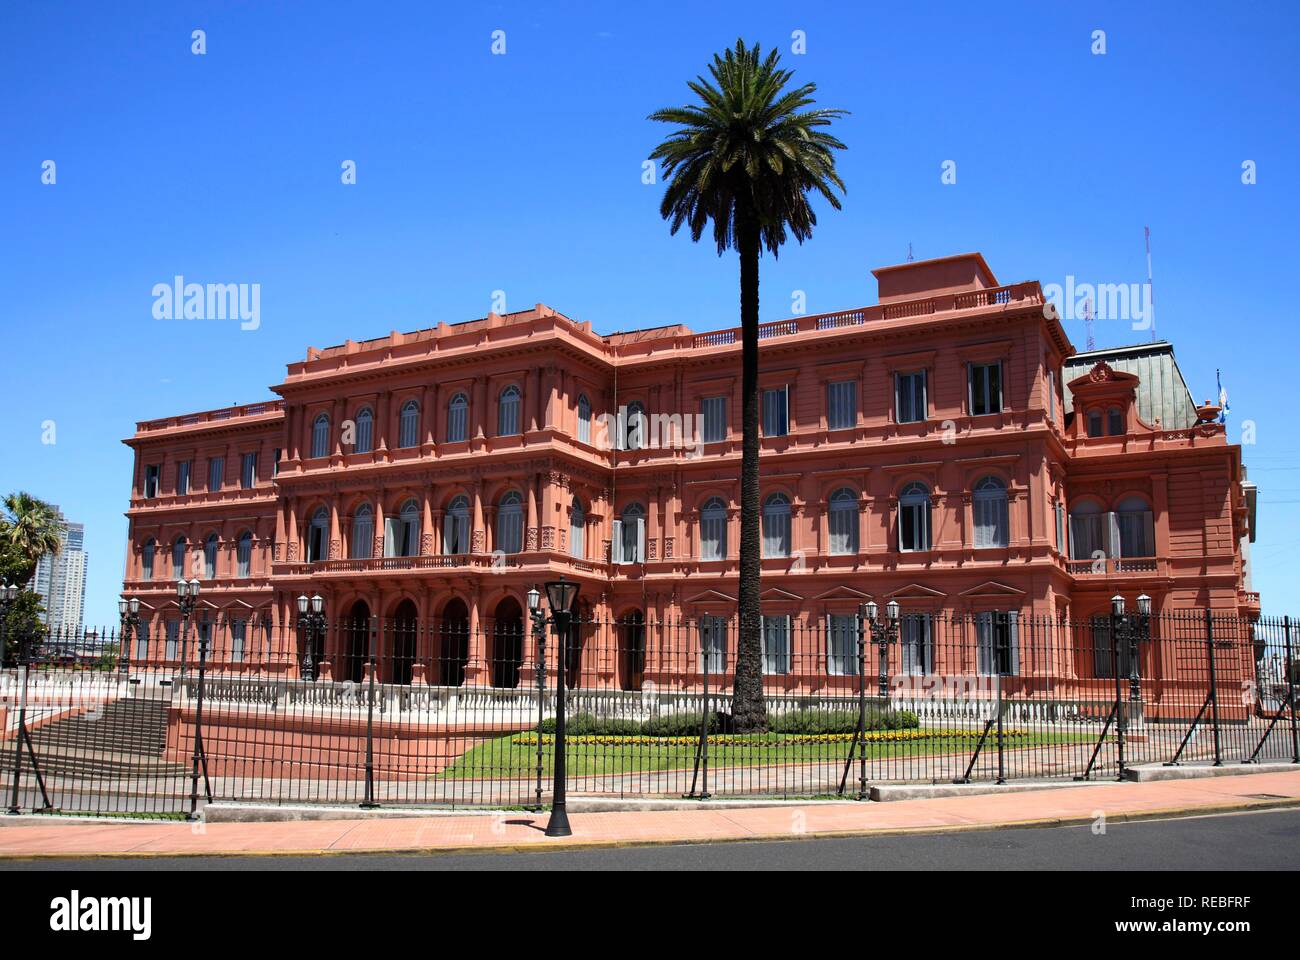 Casa Rosada, le palais présidentiel sur le côté est de la place Plaza de Mayo, Buenos Aires, Argentine Banque D'Images